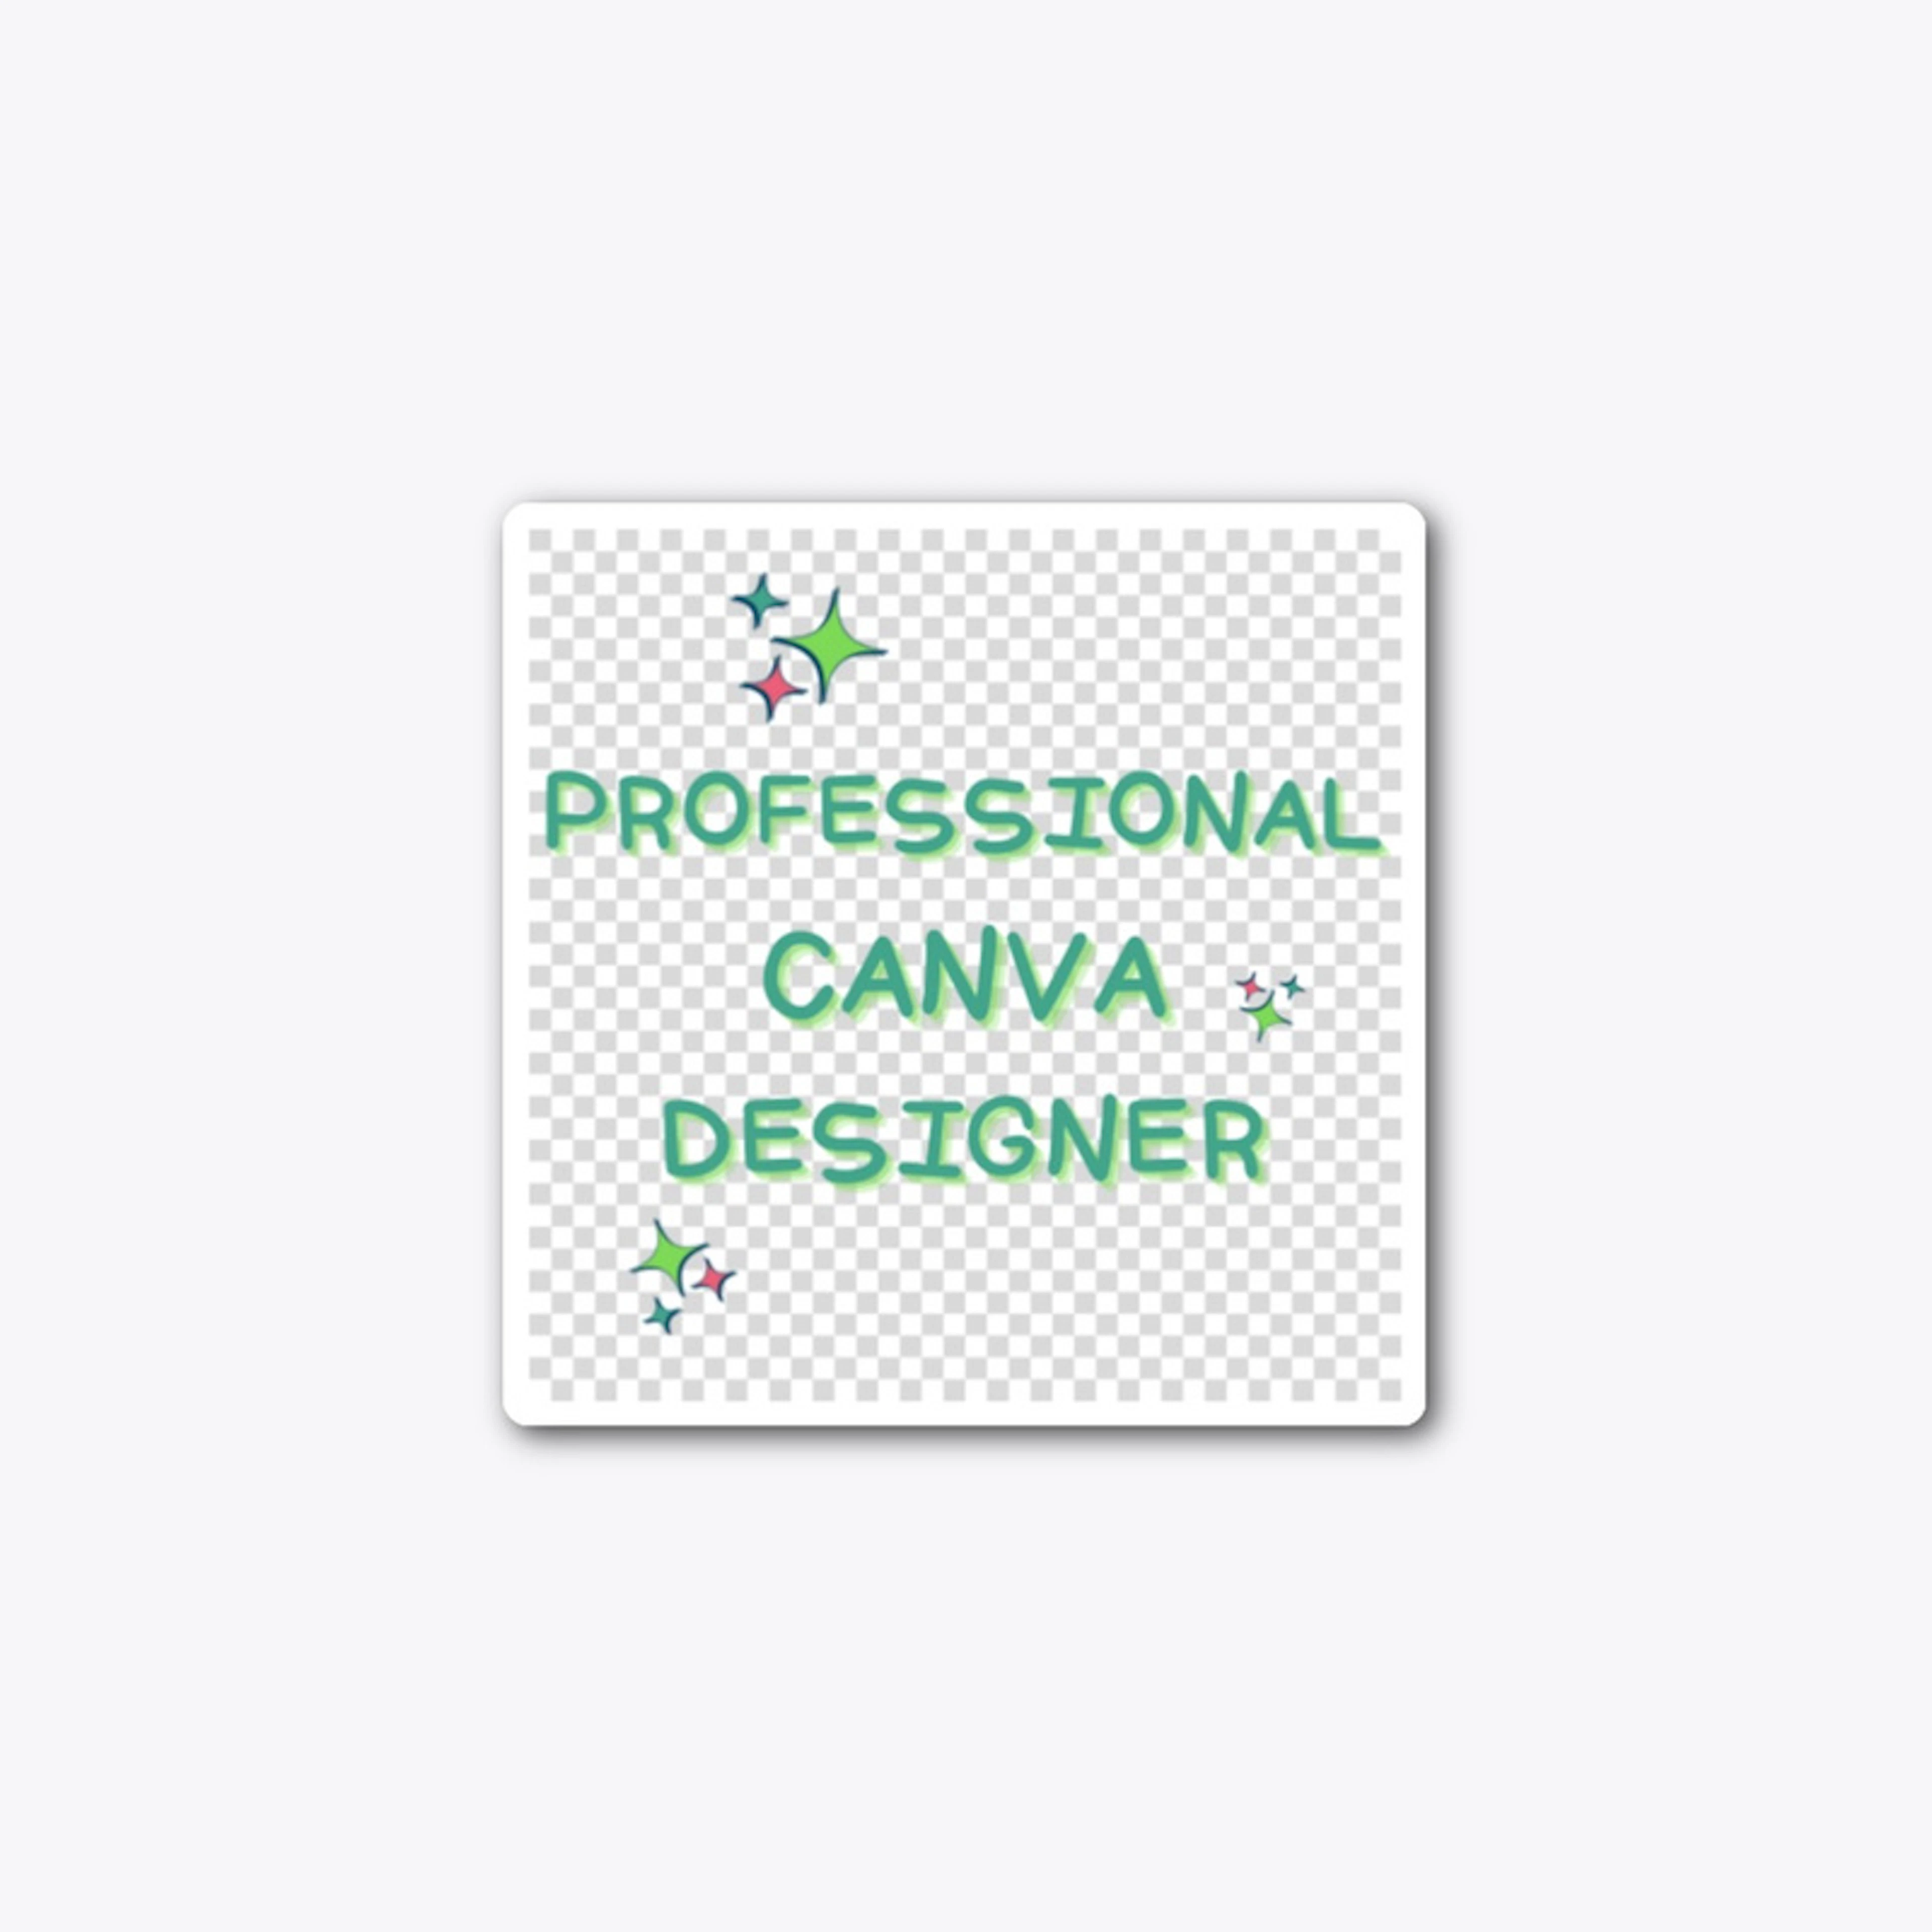 Professional Canva Designer